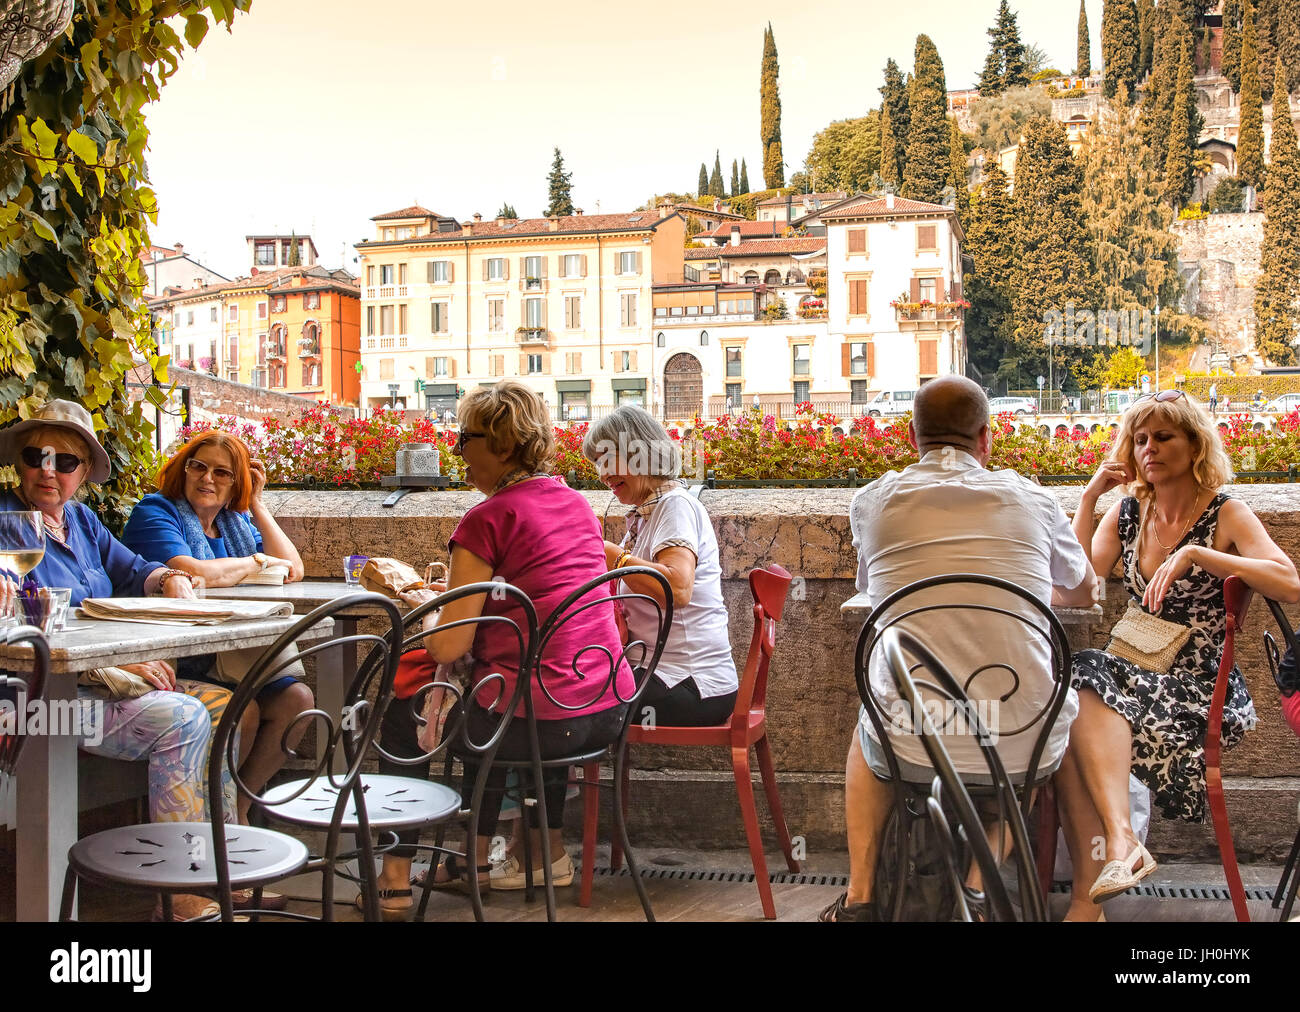 Cafe lungo il corso del fiume Adige a Verona Foto Stock